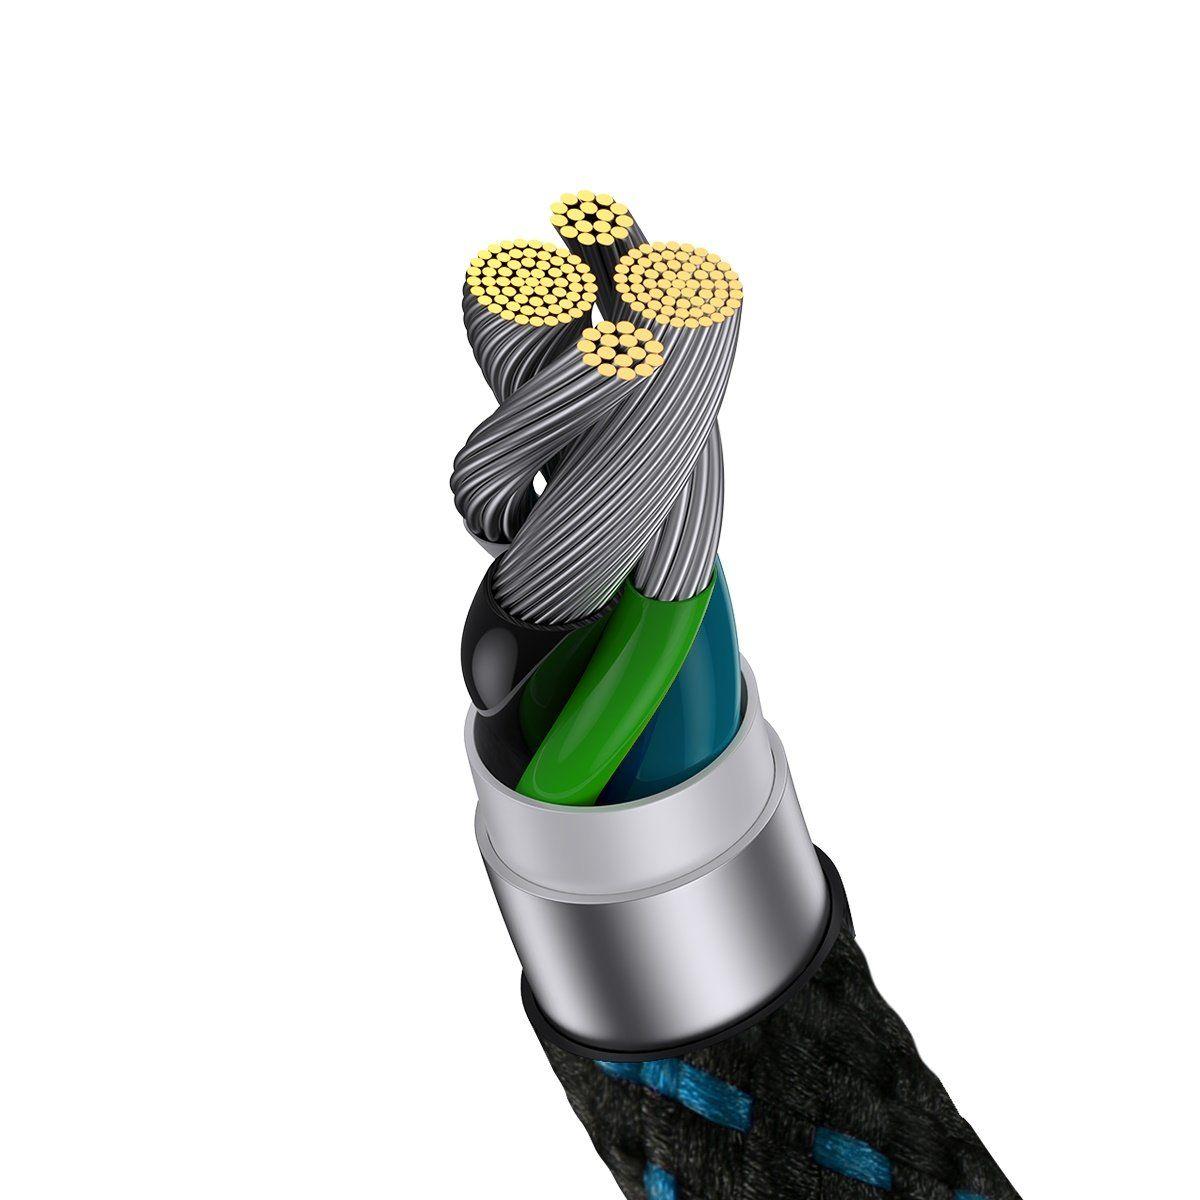 Baseus MVP 2 Elbow kątowy kabel przewód z bocznym wtykiem USB / Lightning 2m 2.4A niebieski (CAVP000121)